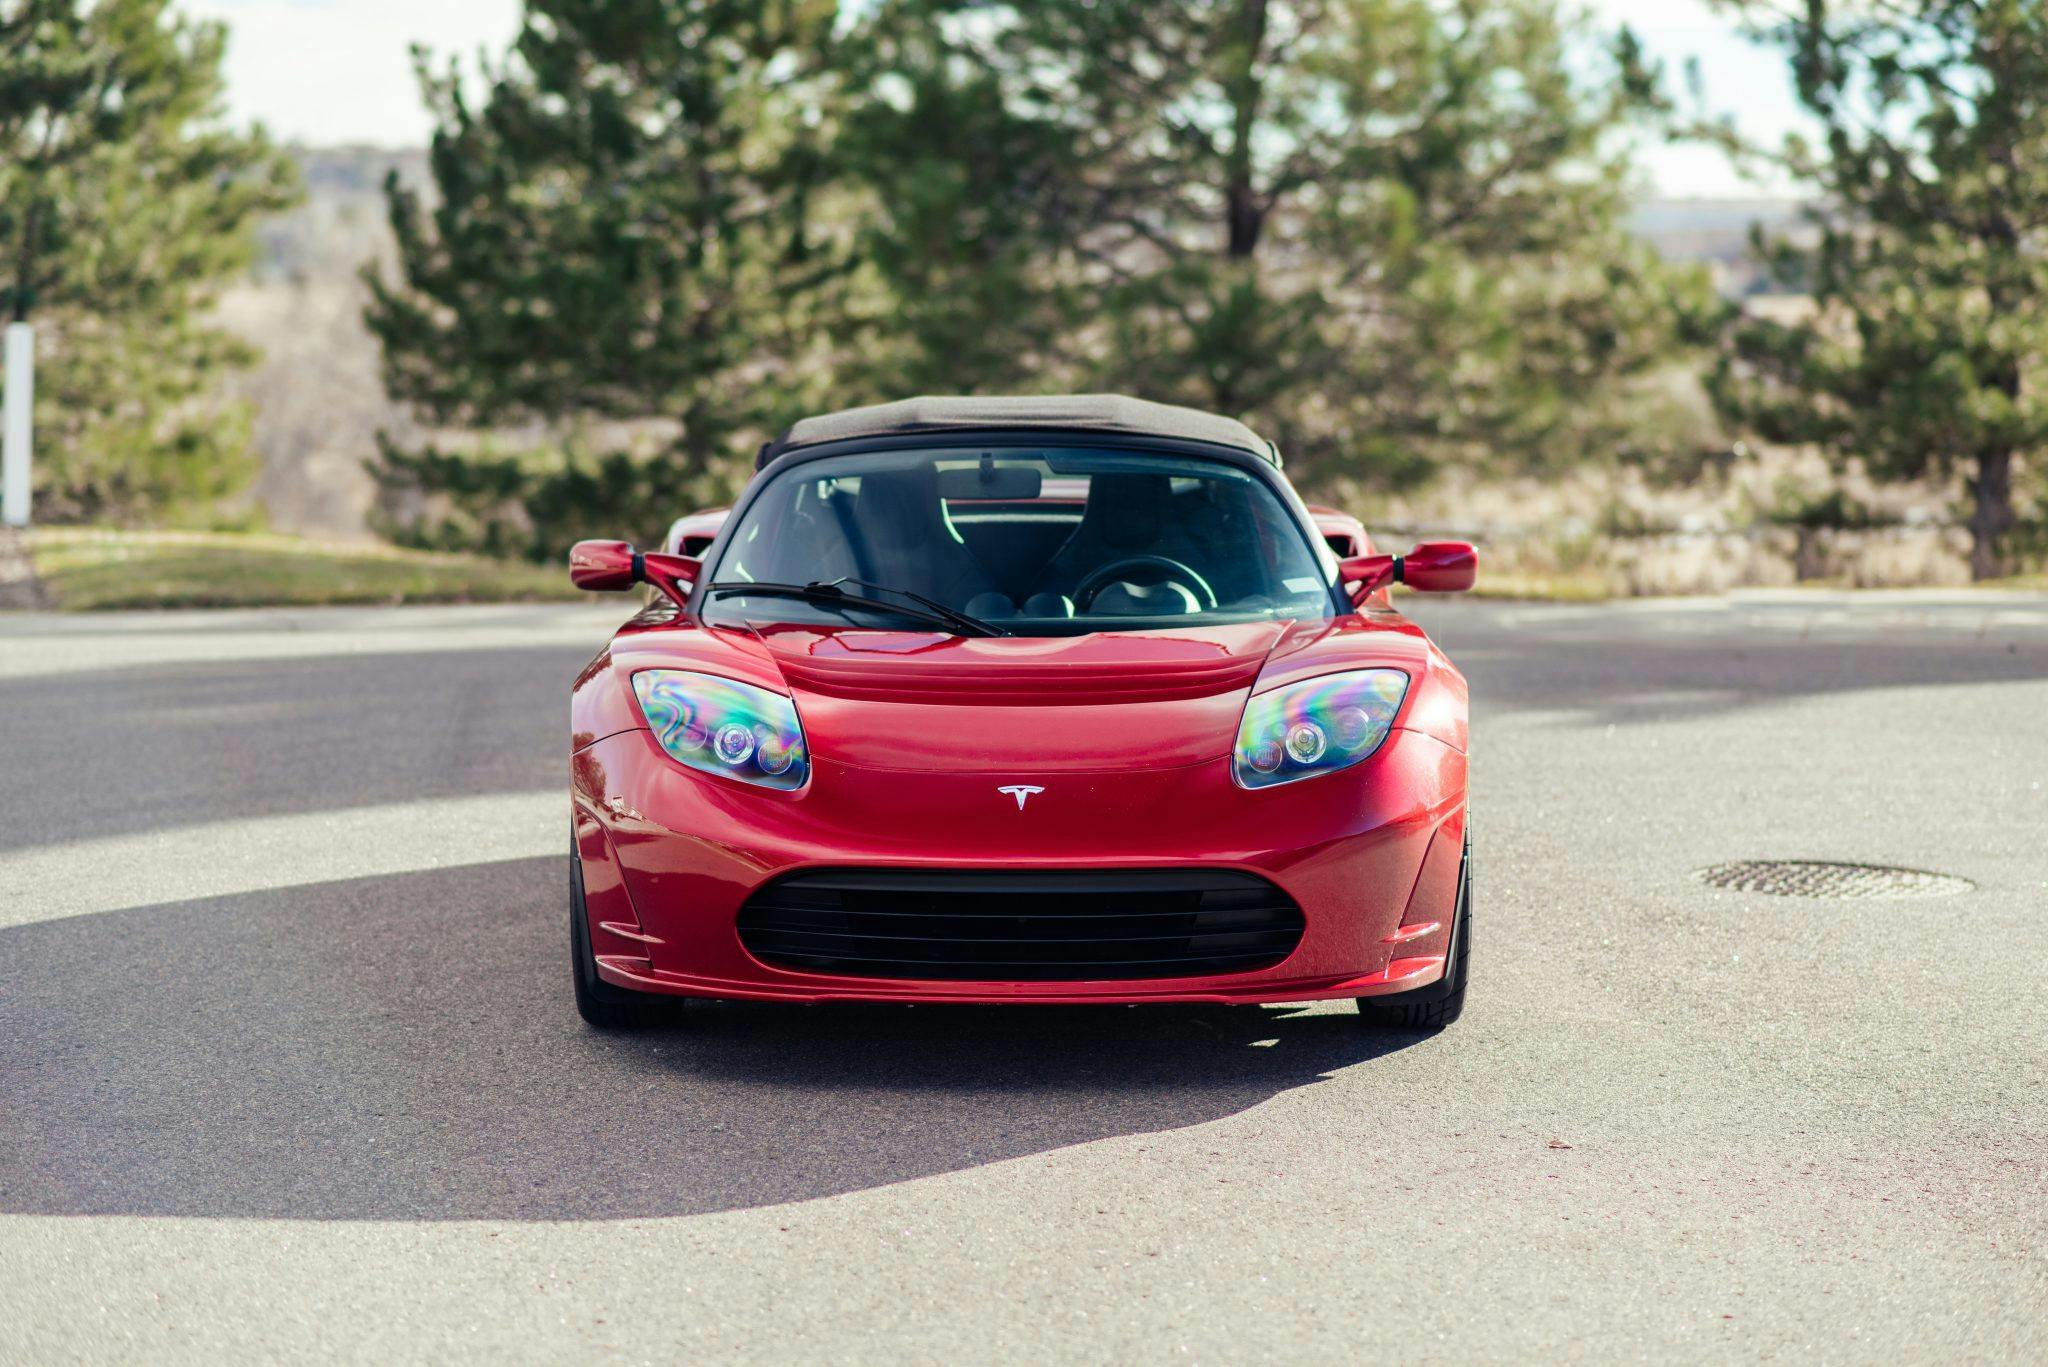 Tesla Roadster front